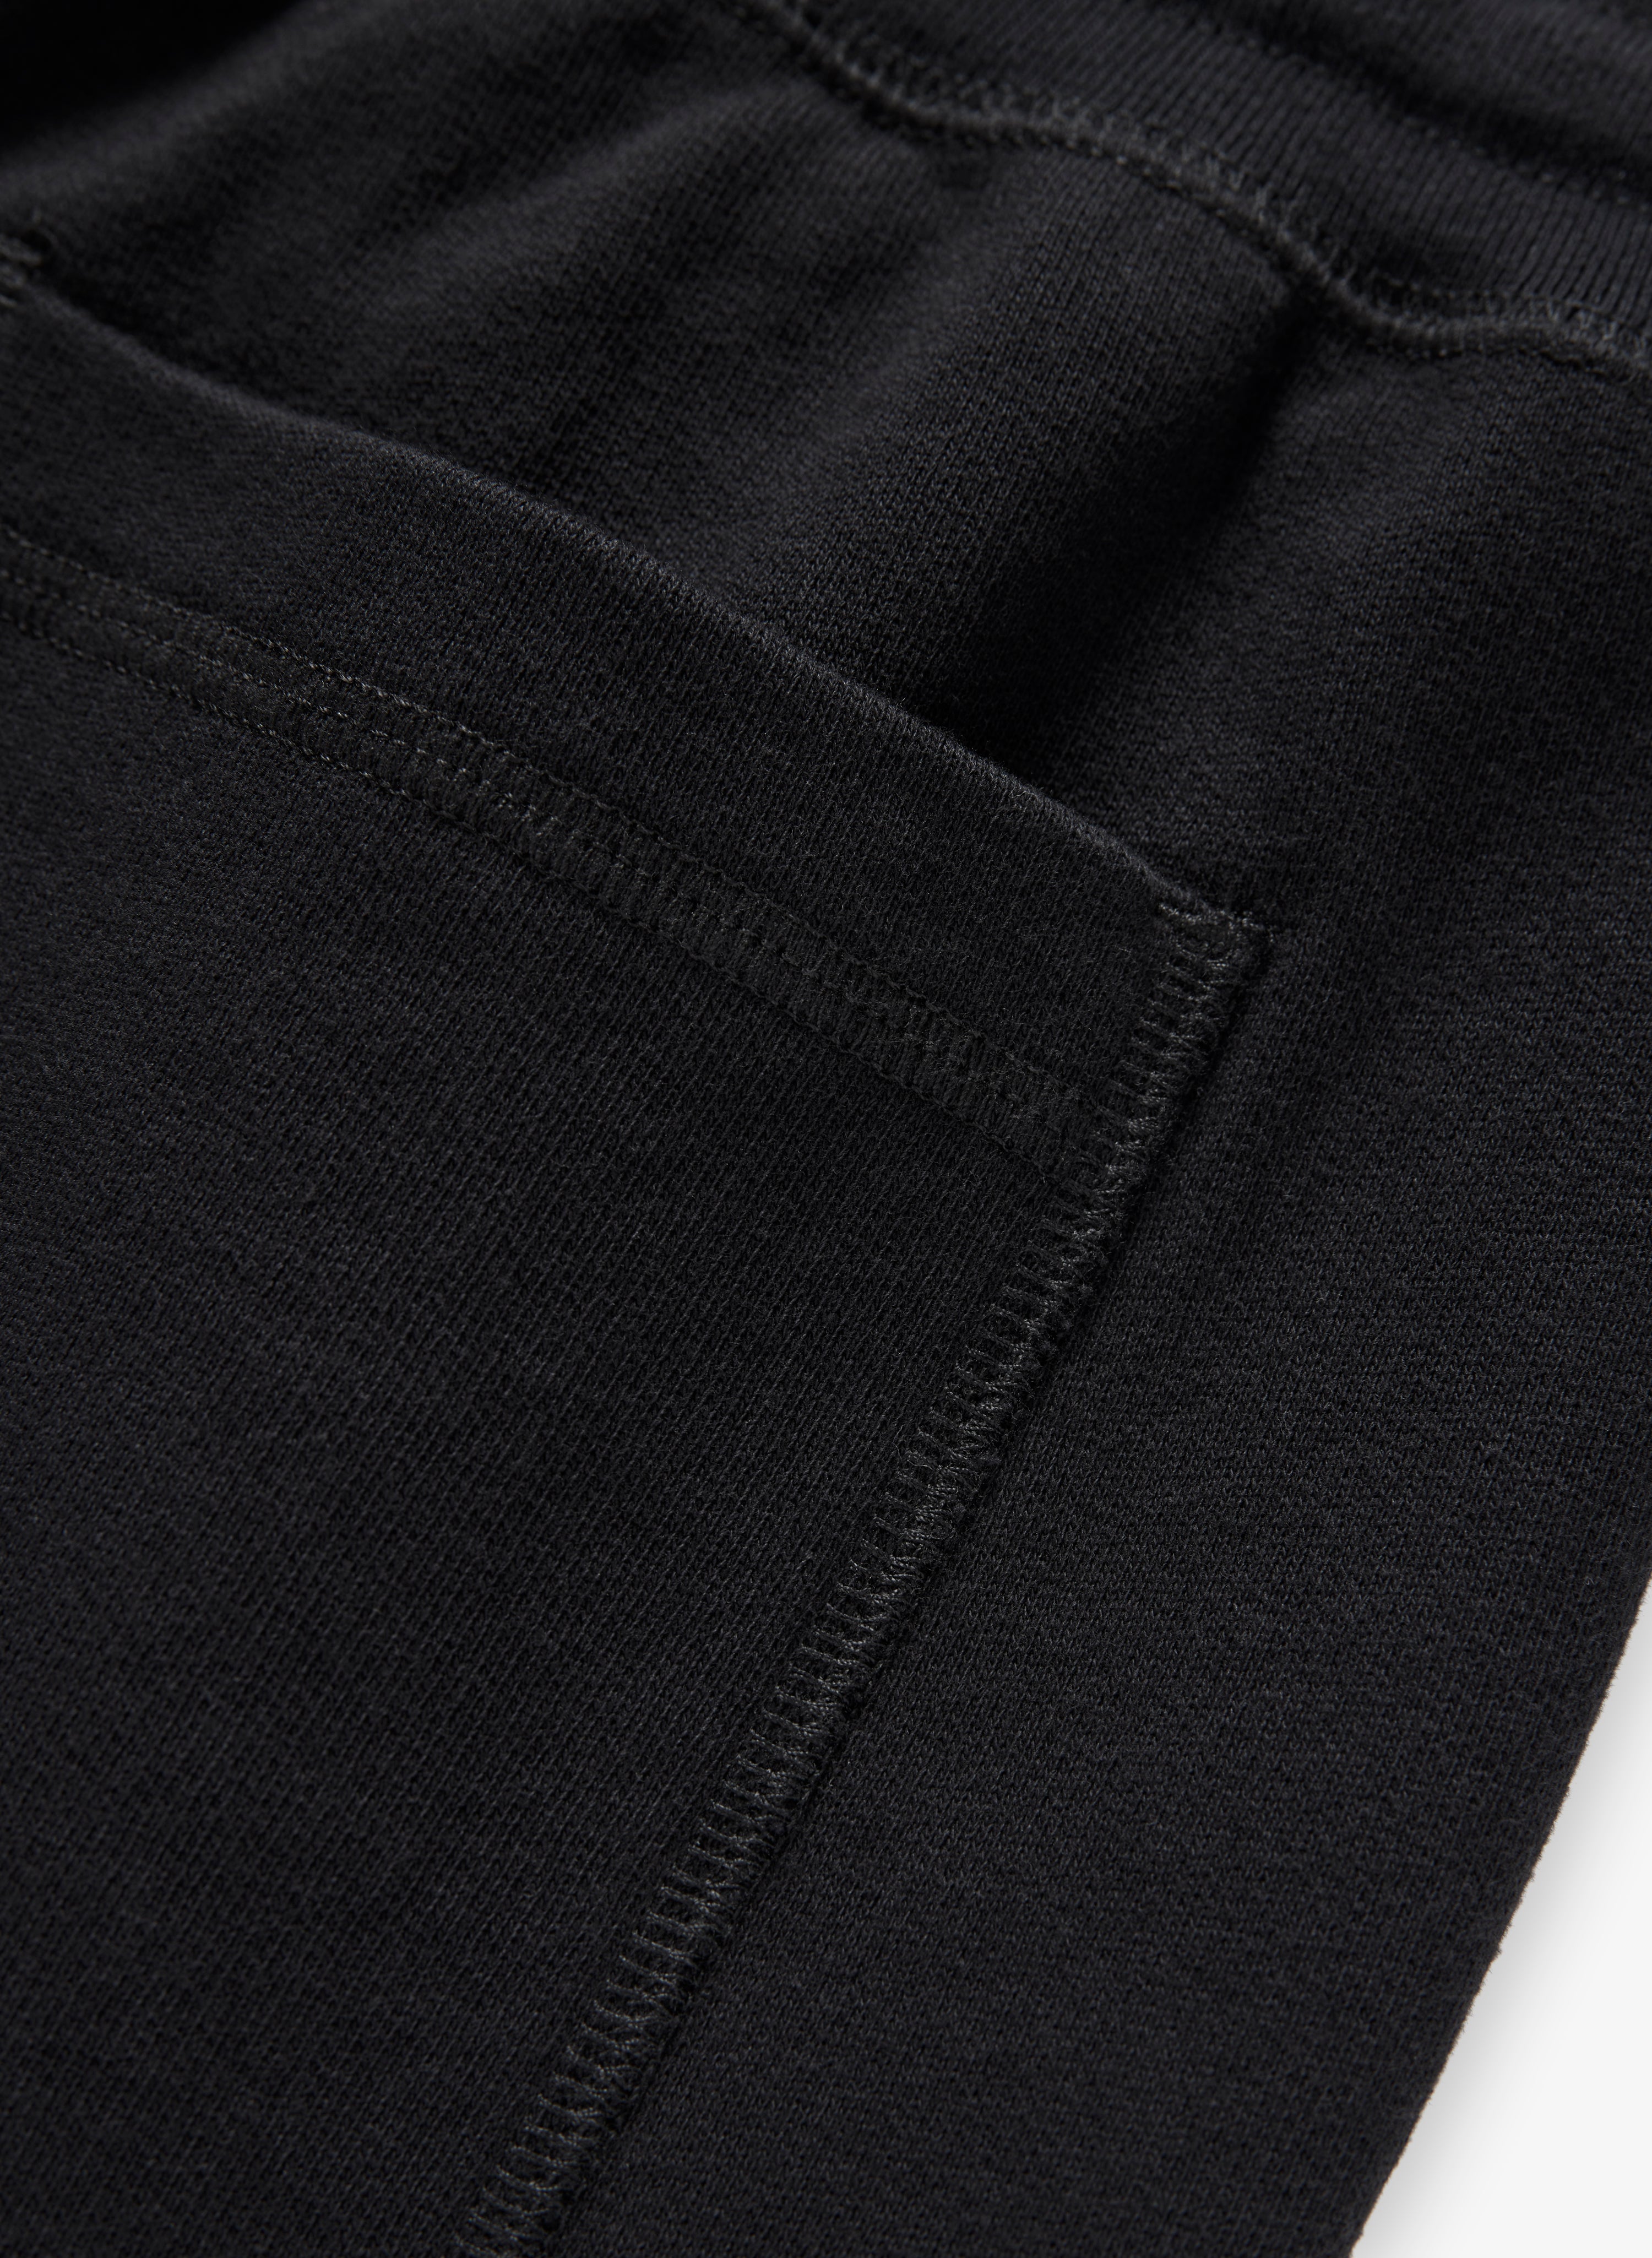 人気ブランドの jjjjound - Ash J90 Sweatpants-Black in J90 S - Made 裏起毛 メンズ